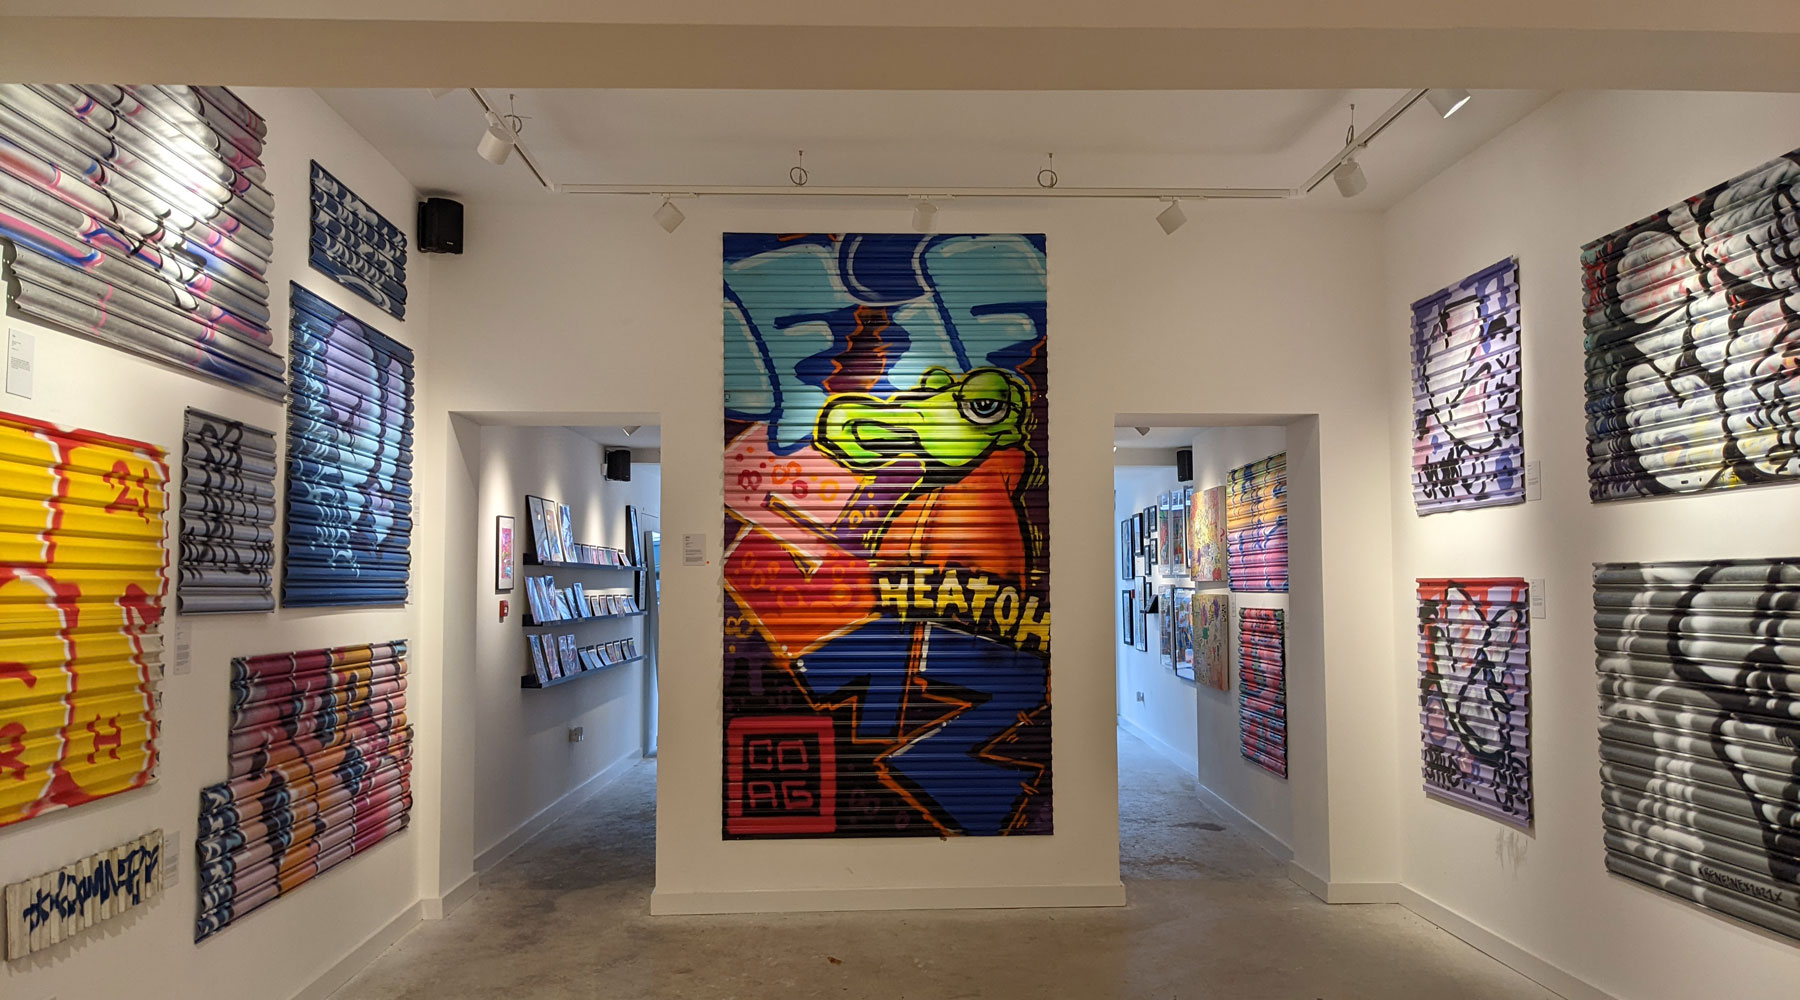 Graffiti covered shop shutters fills an art gallery